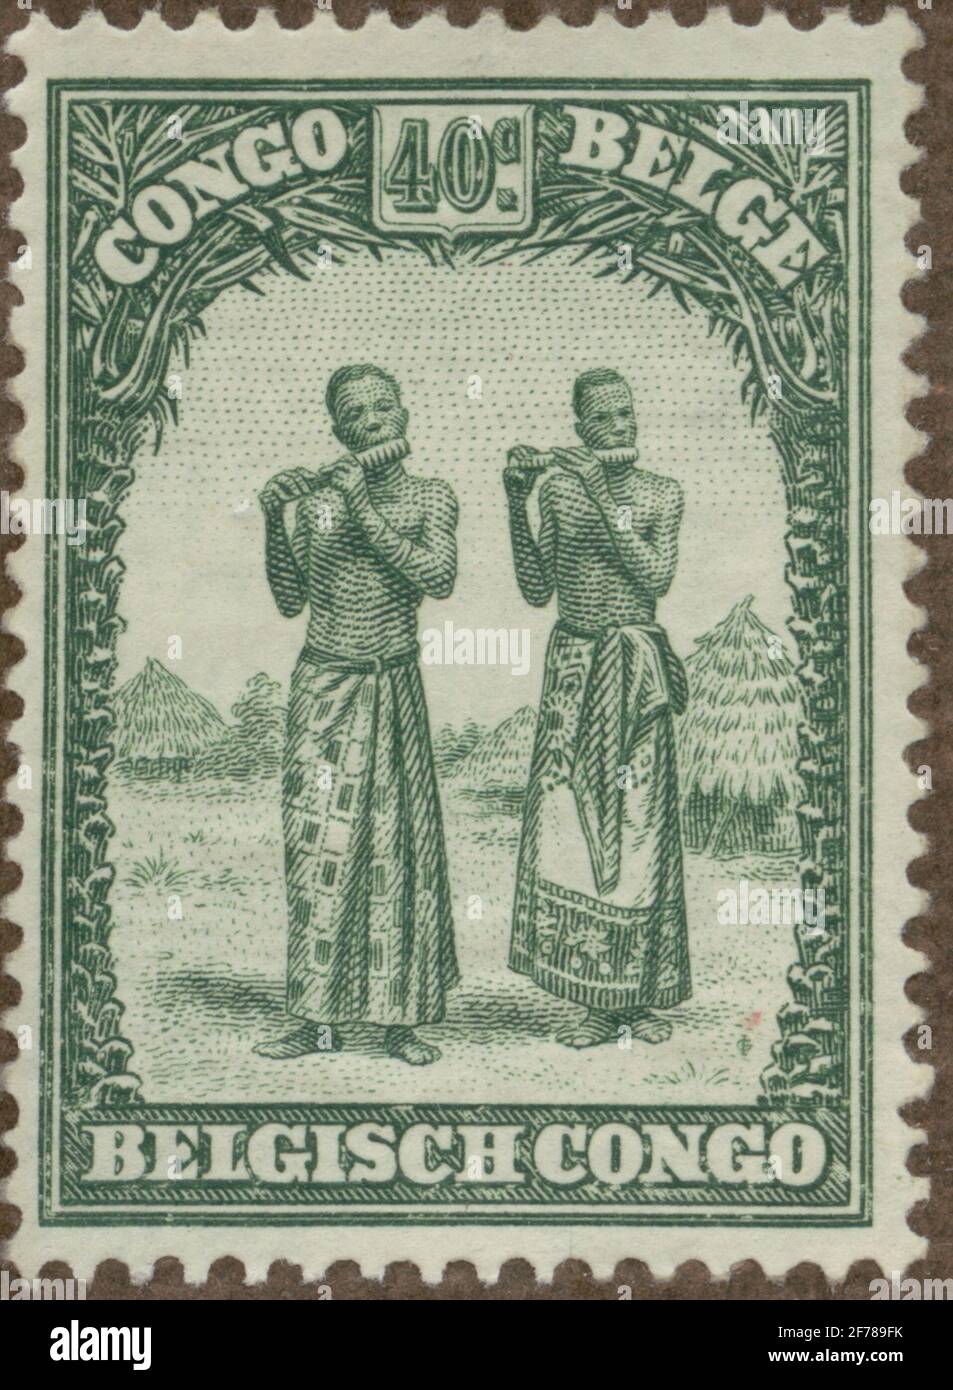 Briefmarke der Gösta Bodman's Philatelist Association, begann 1950.die Briefmarke aus dem belgischen Kongo, 1931. Musik Männer aus Batela, Kongo. Stockfoto